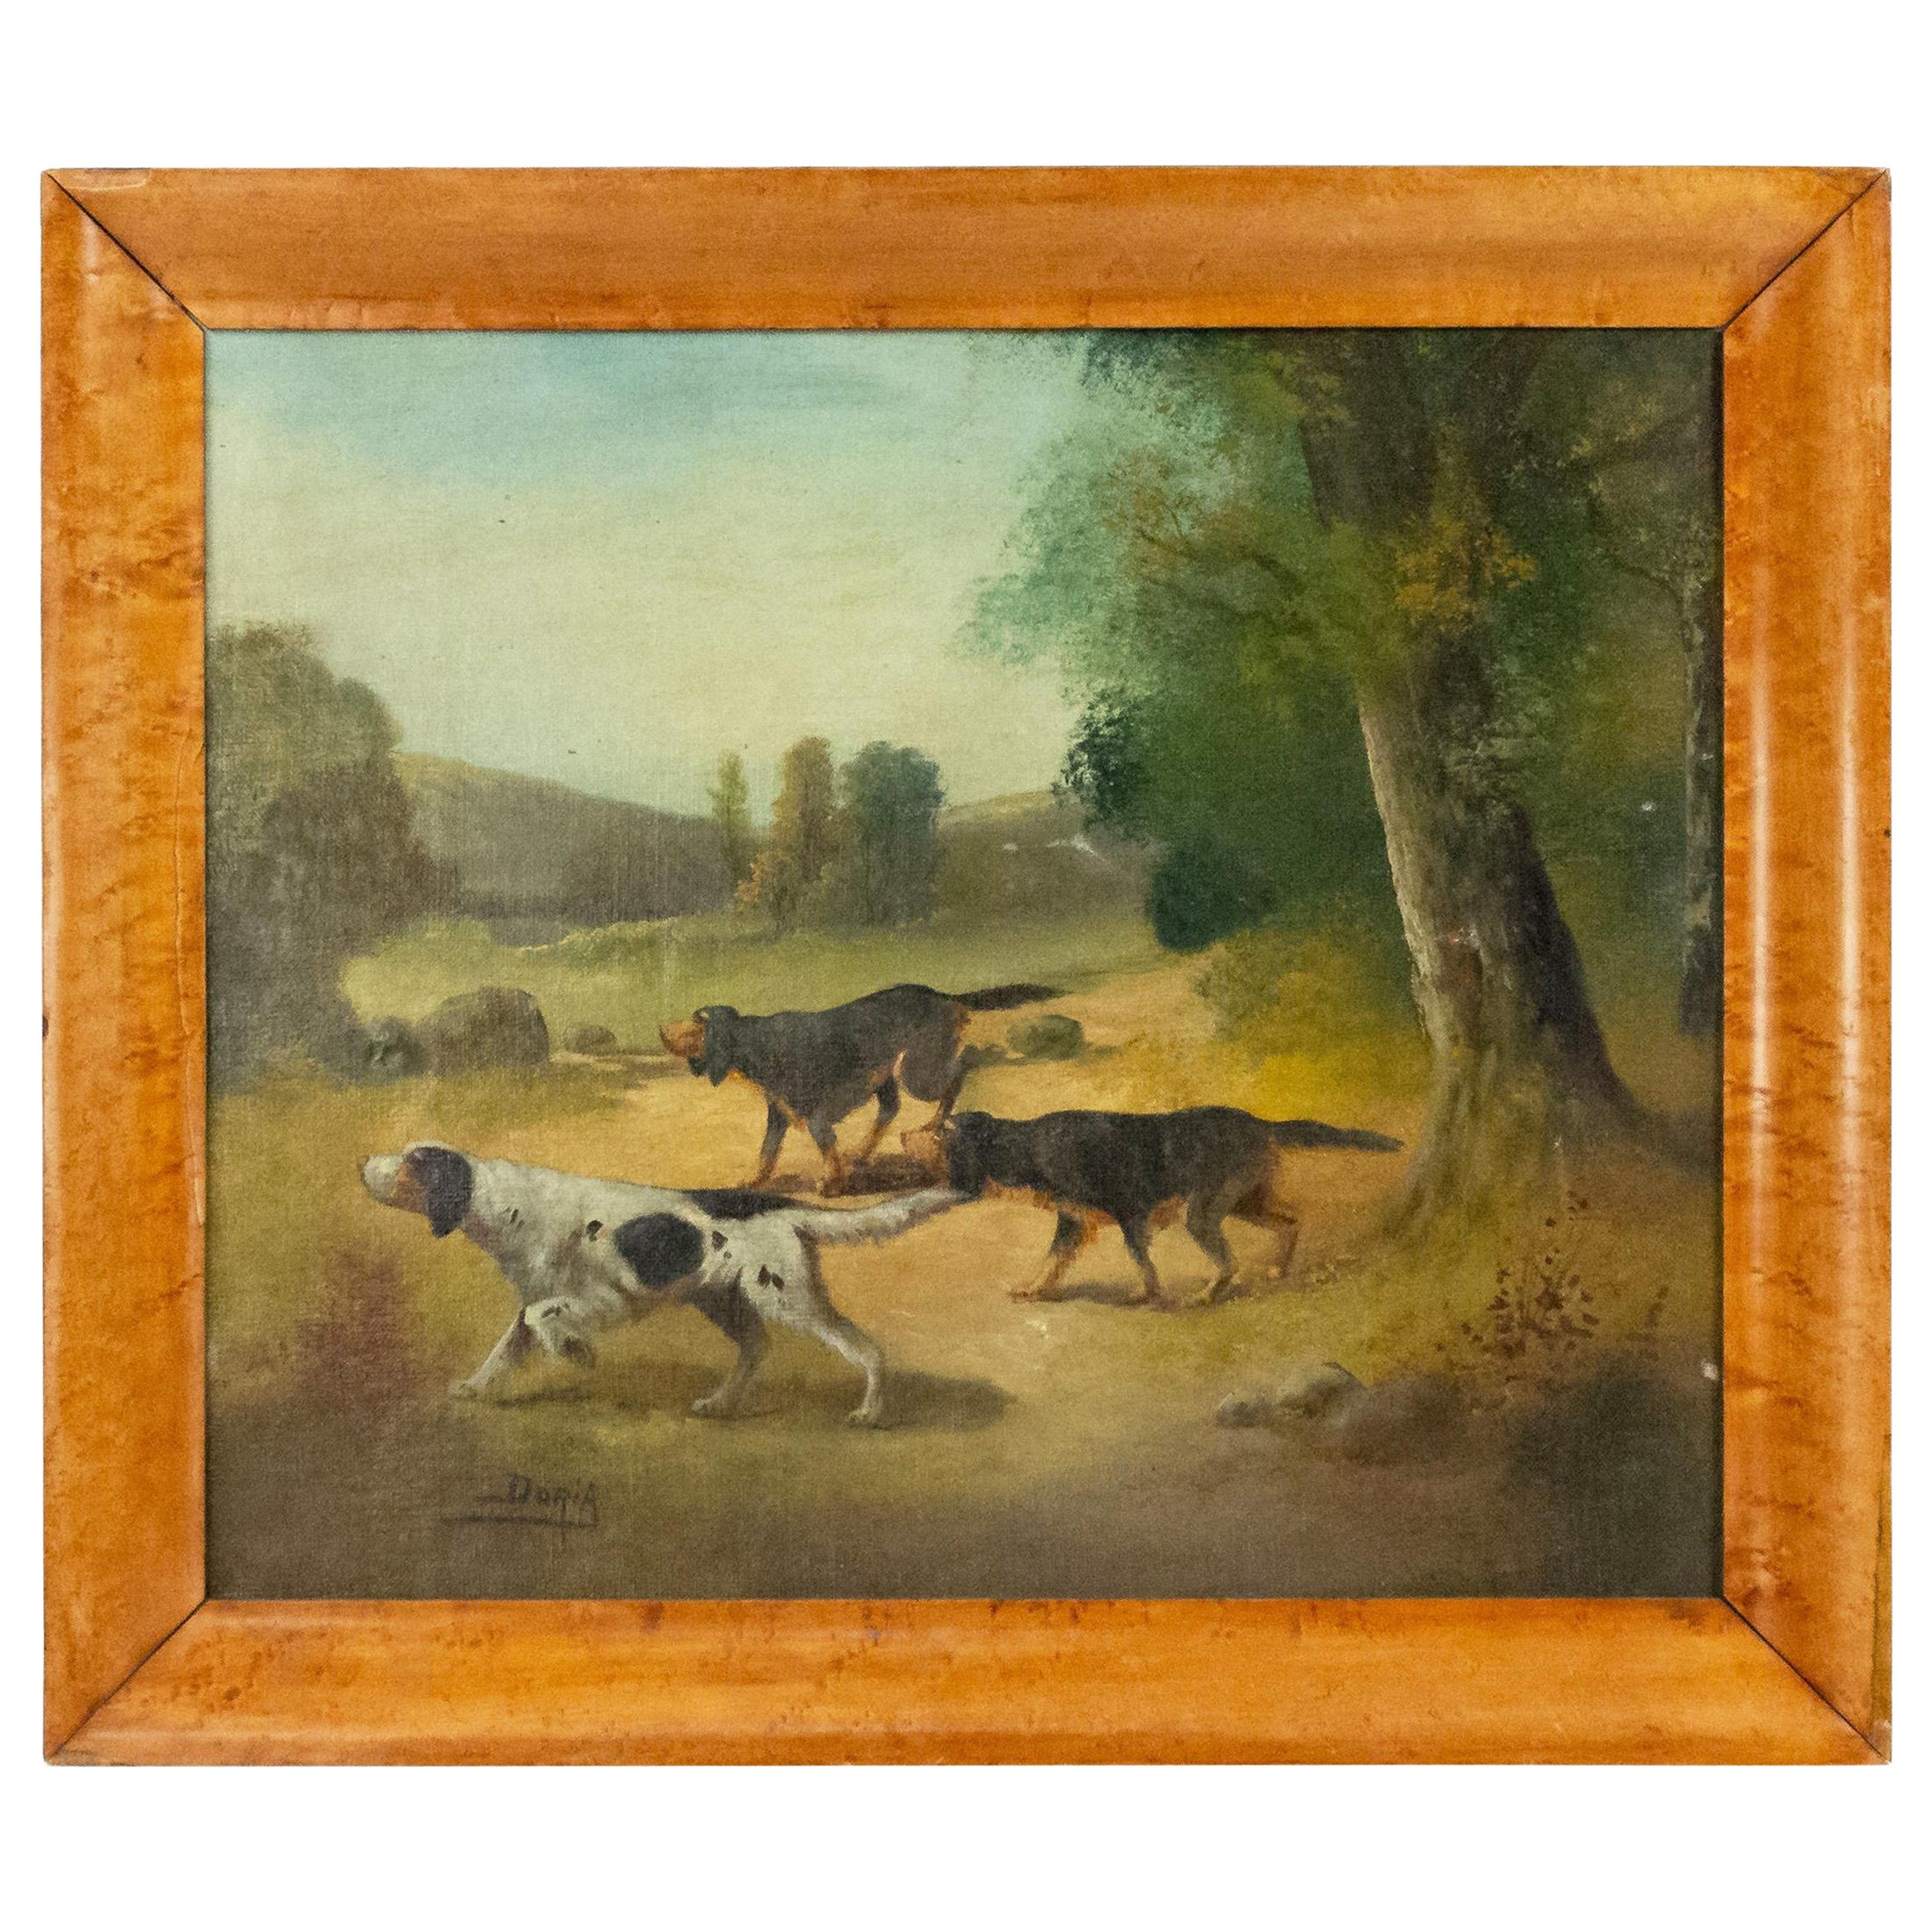 Englisches viktorianisches Landhund-Jagd-Ölgemälde des 20. Jahrhunderts, gerahmt